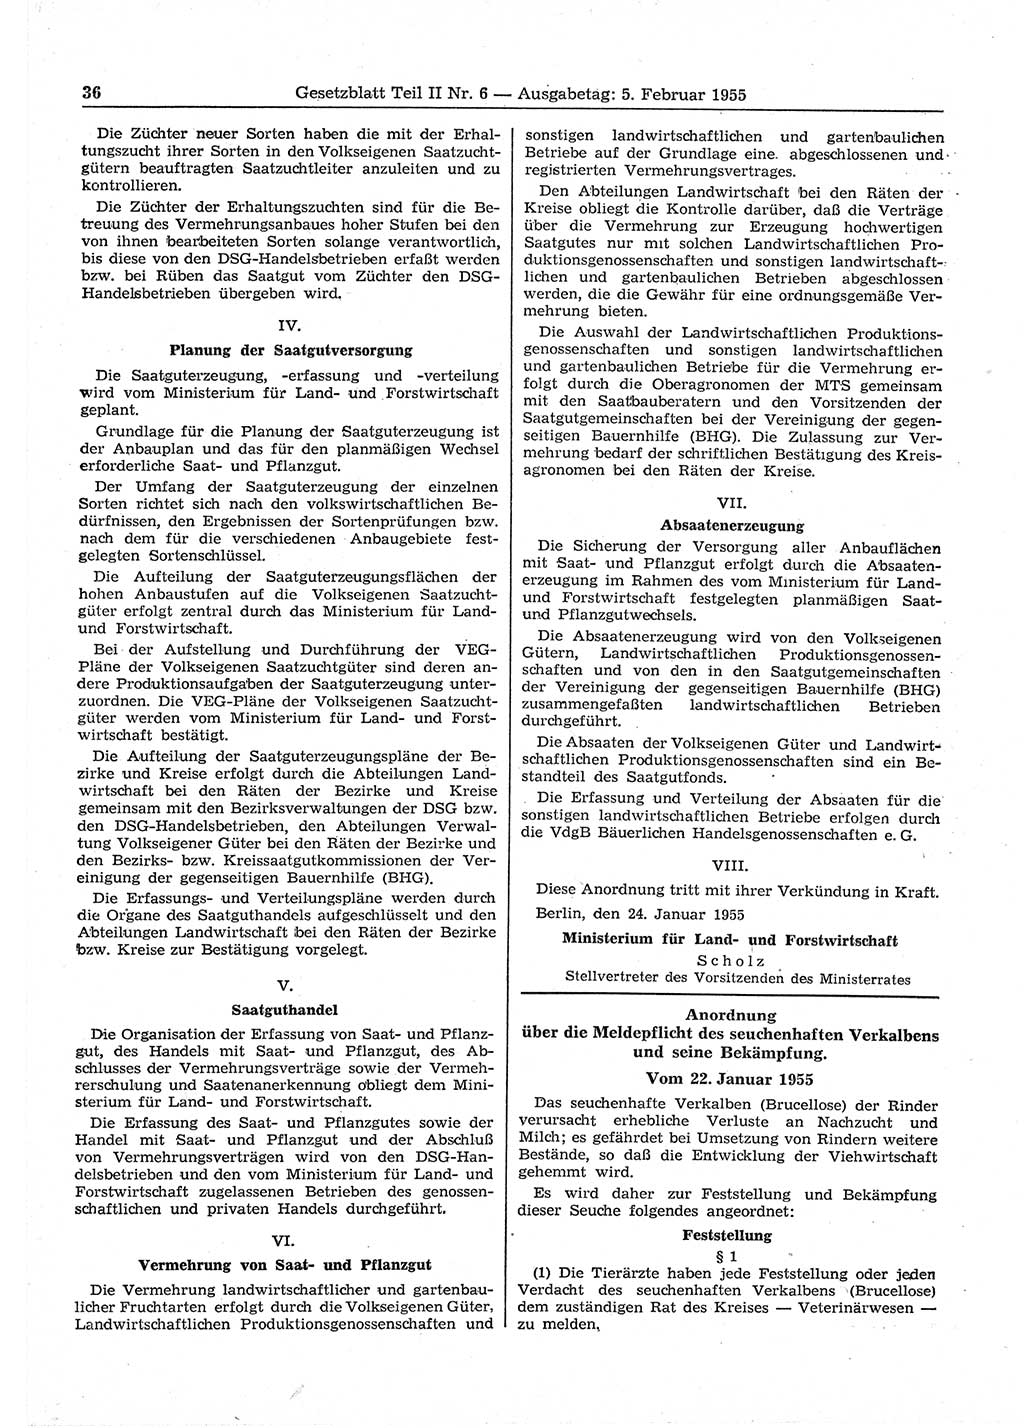 Gesetzblatt (GBl.) der Deutschen Demokratischen Republik (DDR) Teil ⅠⅠ 1955, Seite 36 (GBl. DDR ⅠⅠ 1955, S. 36)